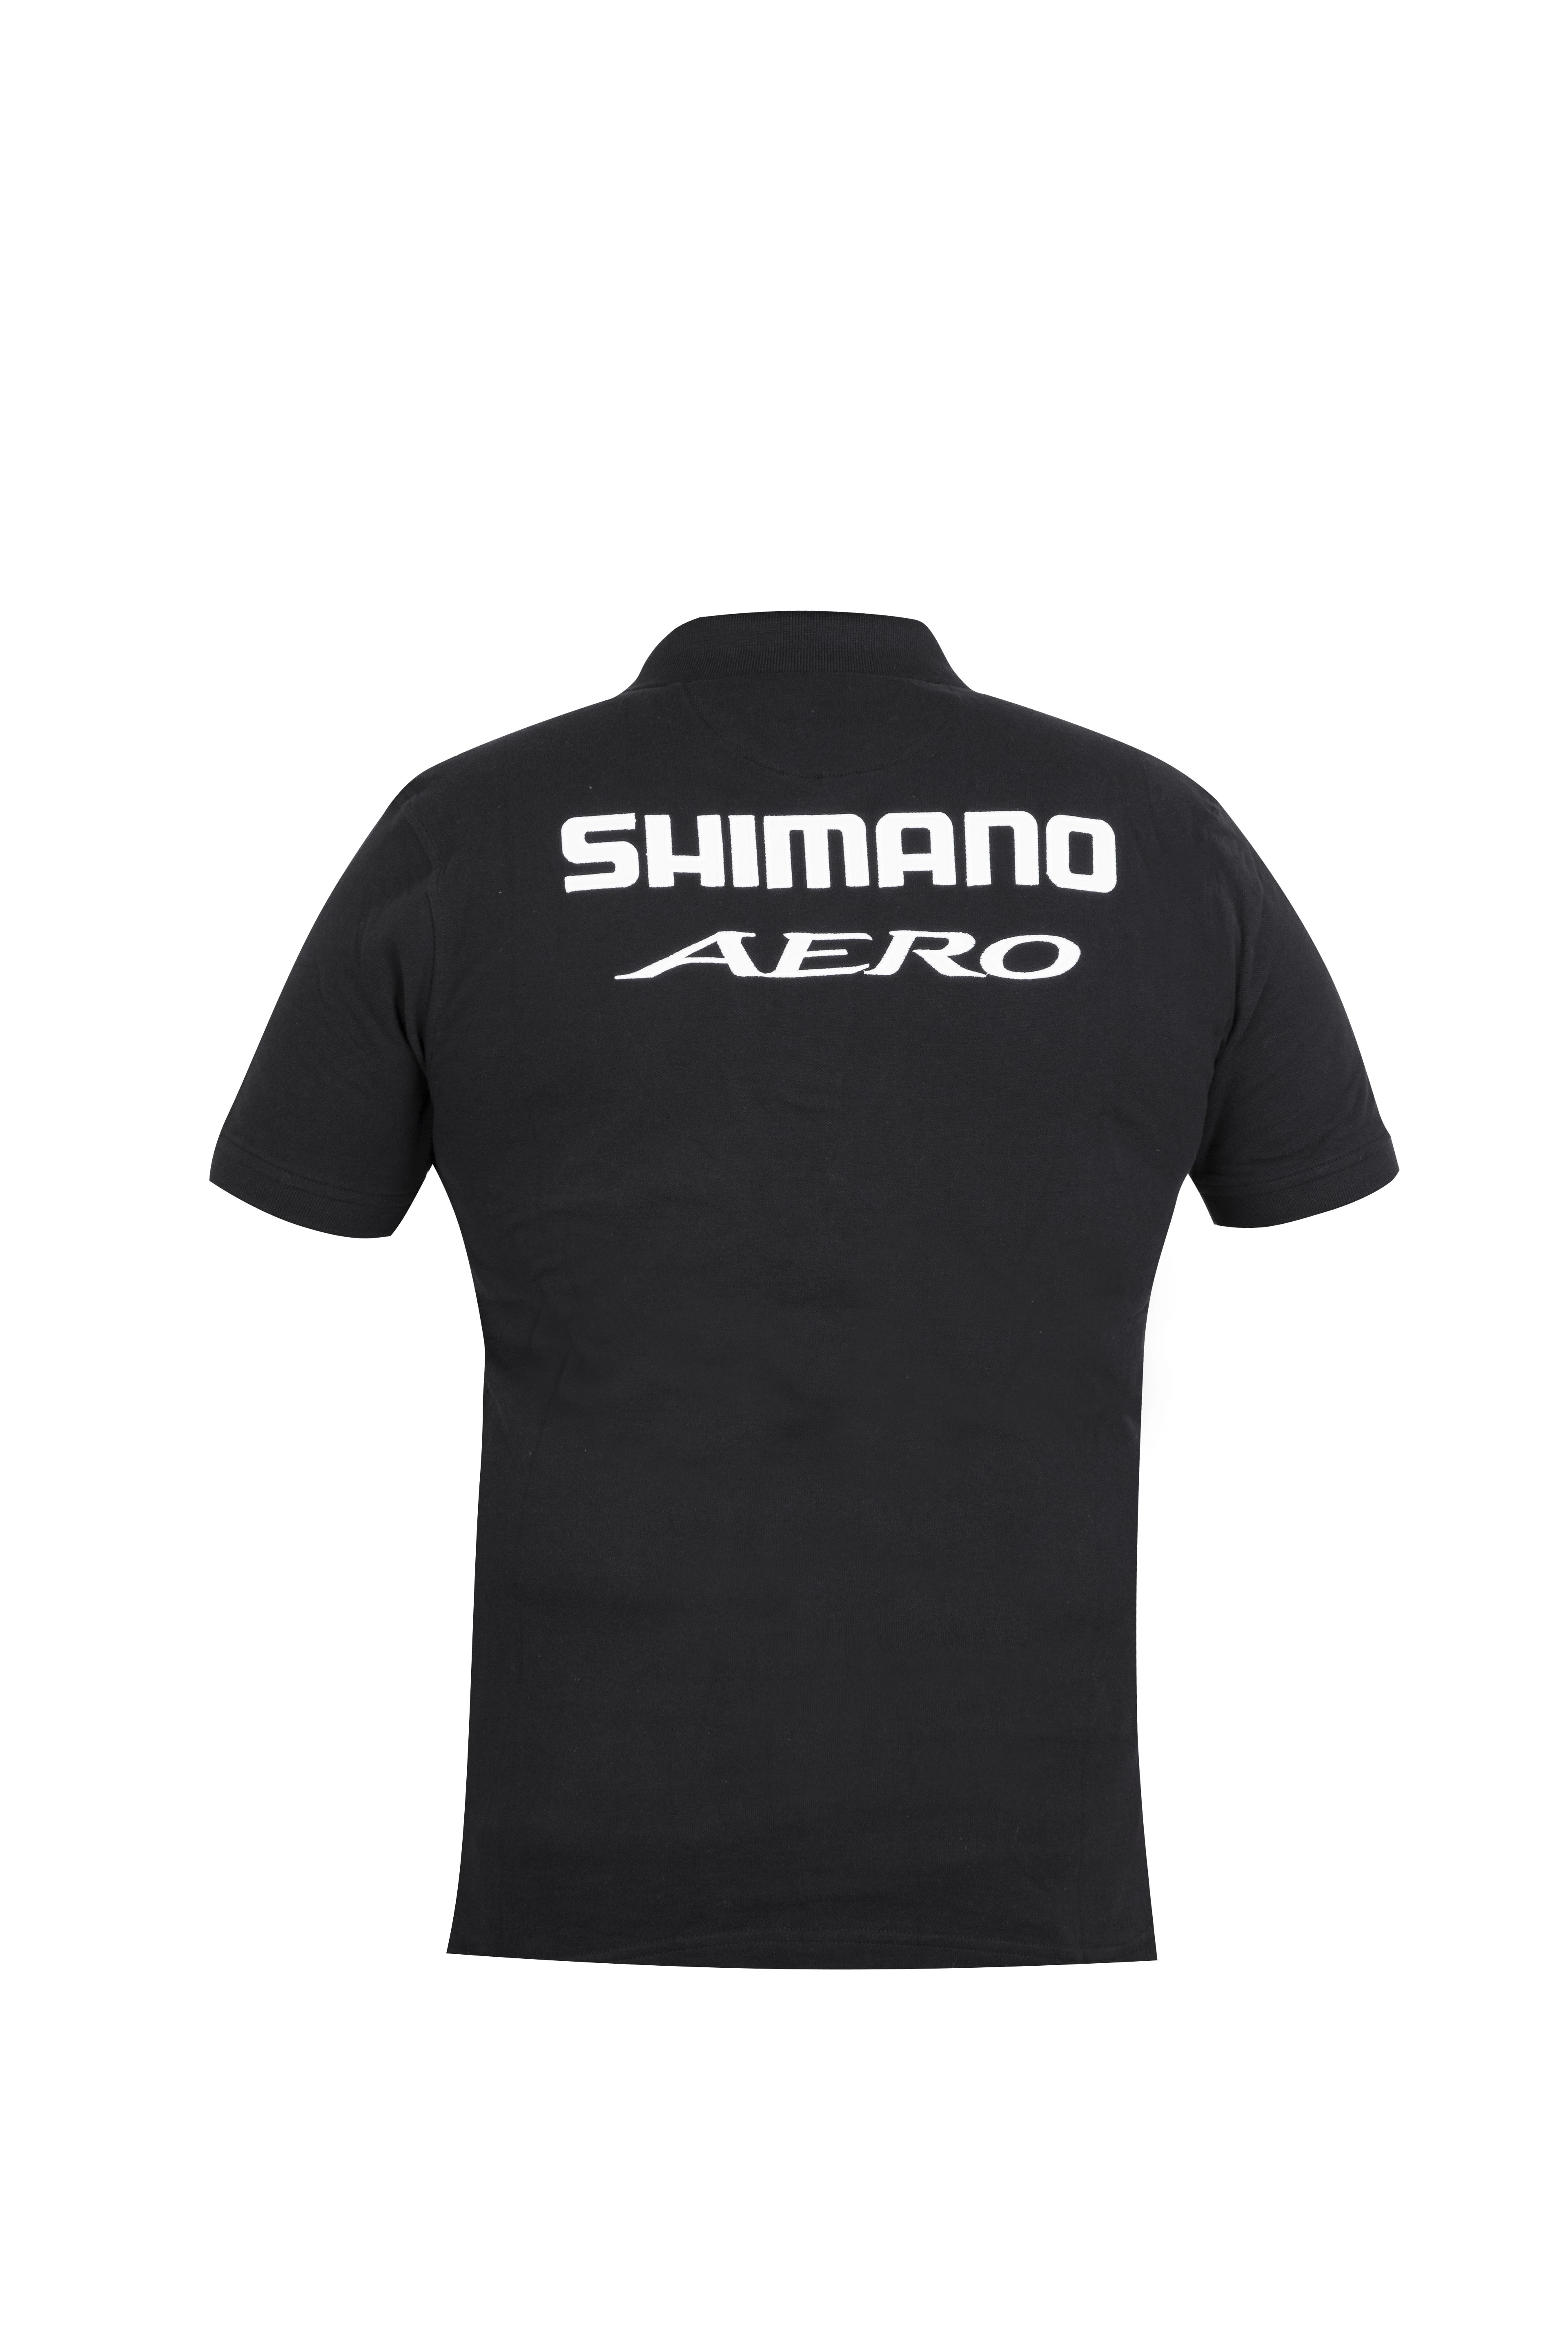 Shimano Aero Polo 2020 Black